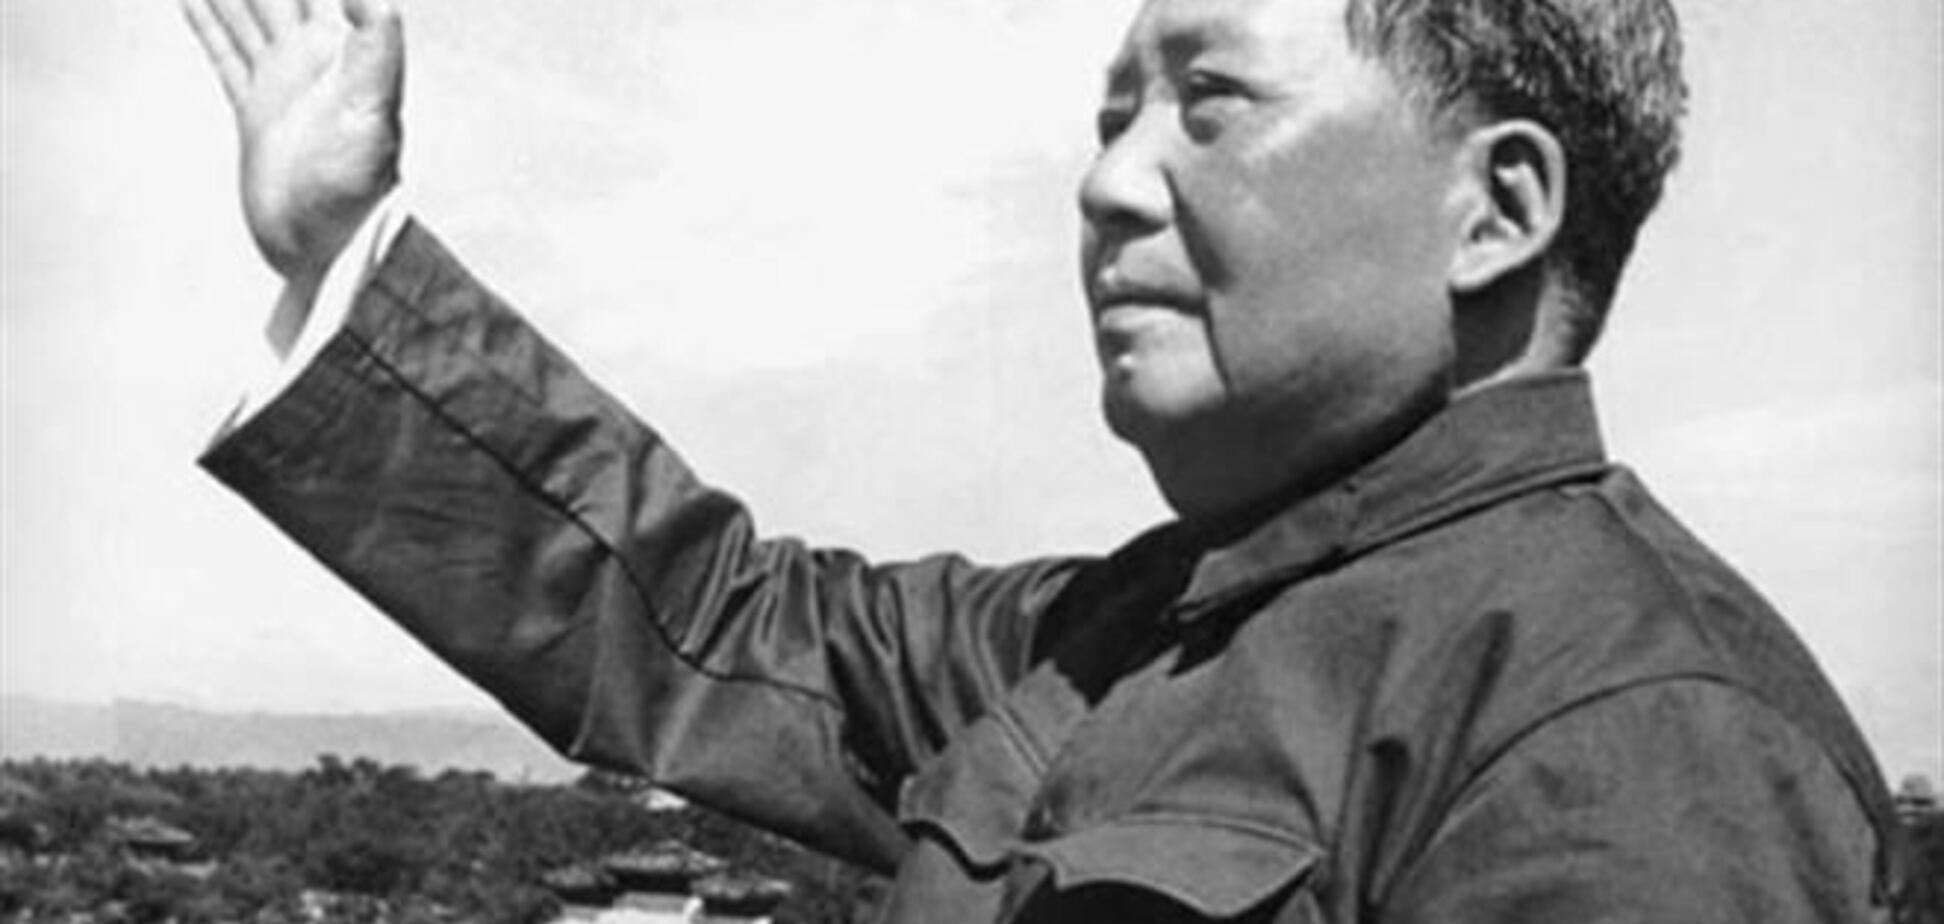 Підписаний Мао Цзедуном конверт пішов з аукціону за $ 1 млн